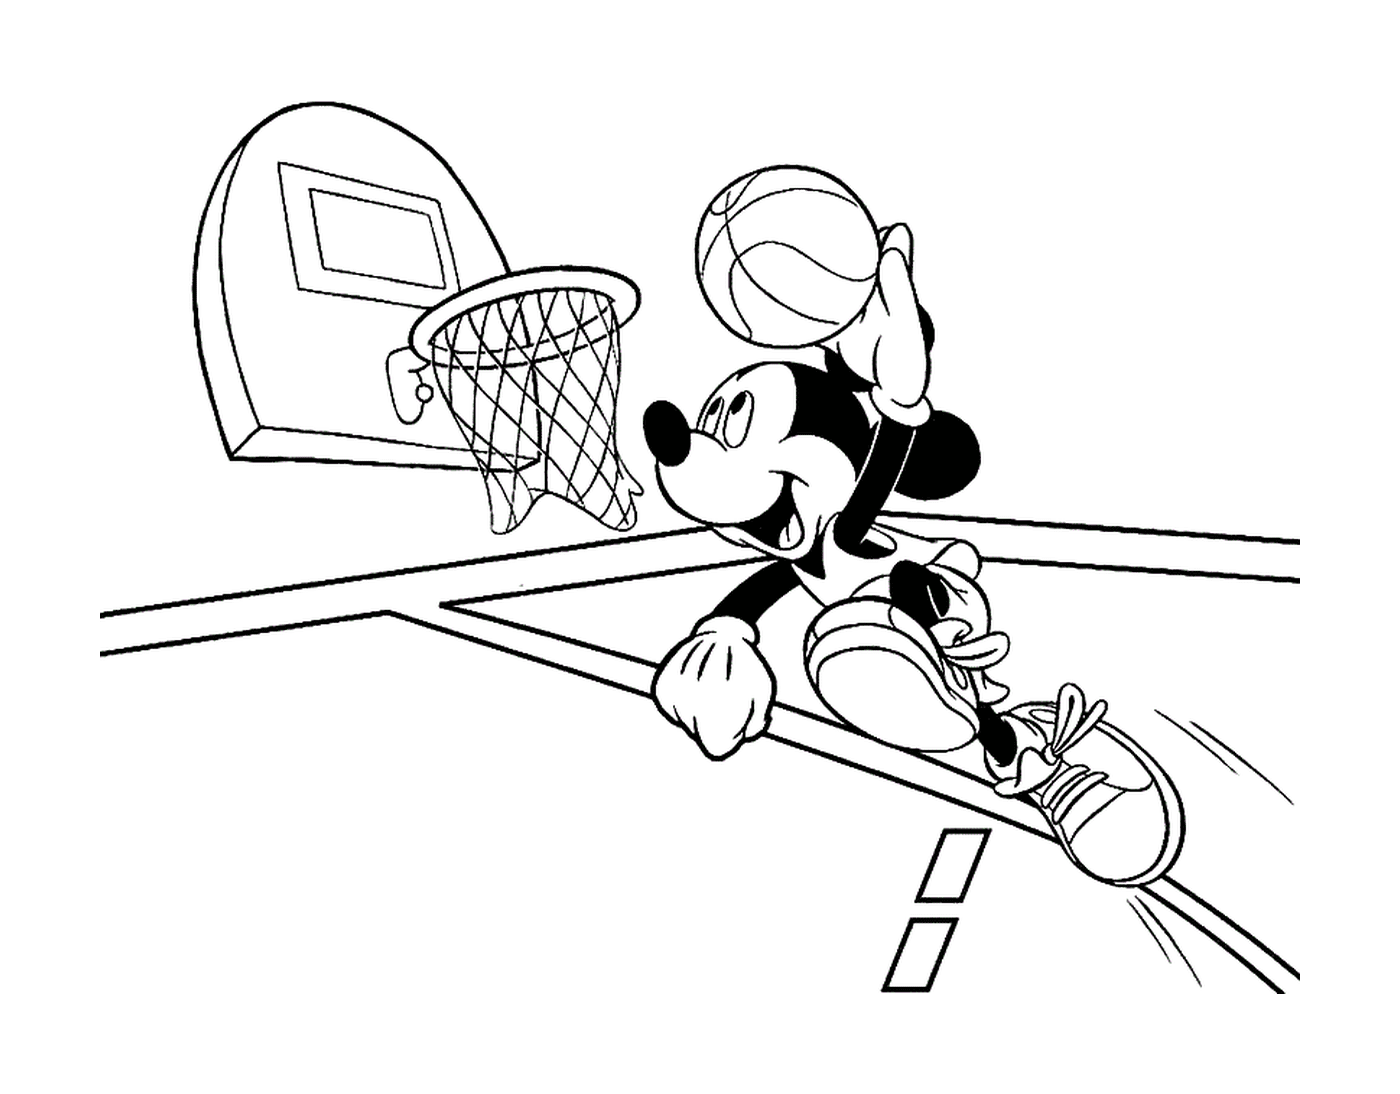  Микки играет в баскетбол с мальчиком 